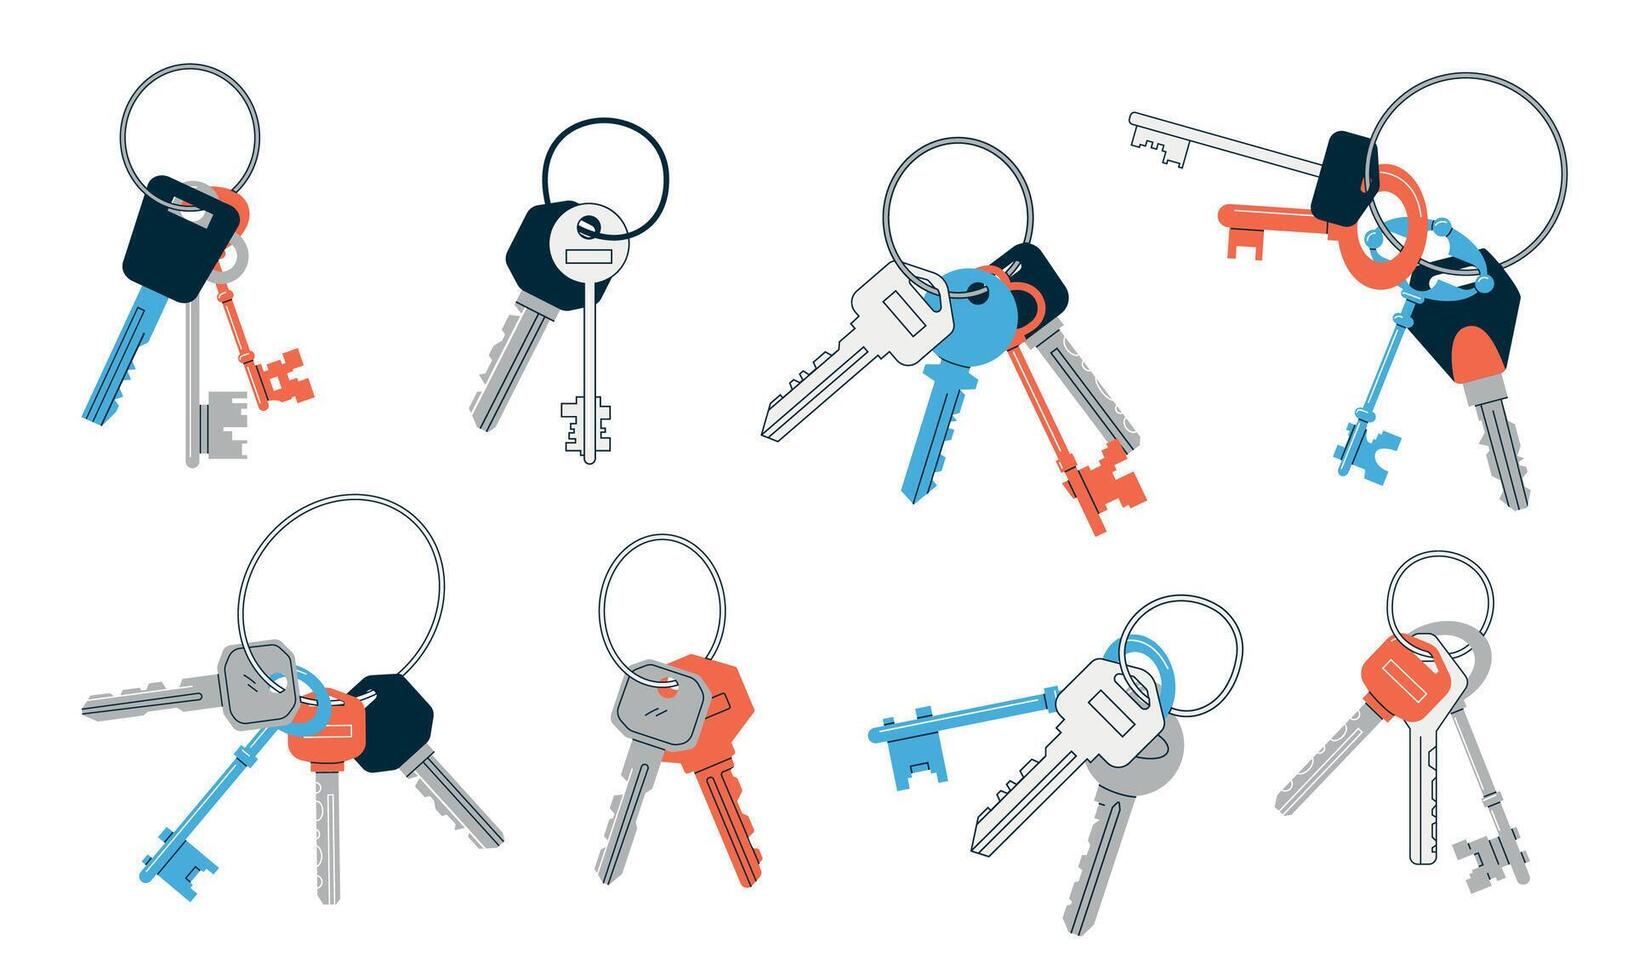 Bündel von Schlüssel. Gekritzel abstrakt Jahrgang und modern Schlüssel mit anders Köpfe Schlüssel Ringe und Schlüssel Halter, echt Nachlass Eigentum und Sicherheit Symbole. Vektor isoliert einstellen